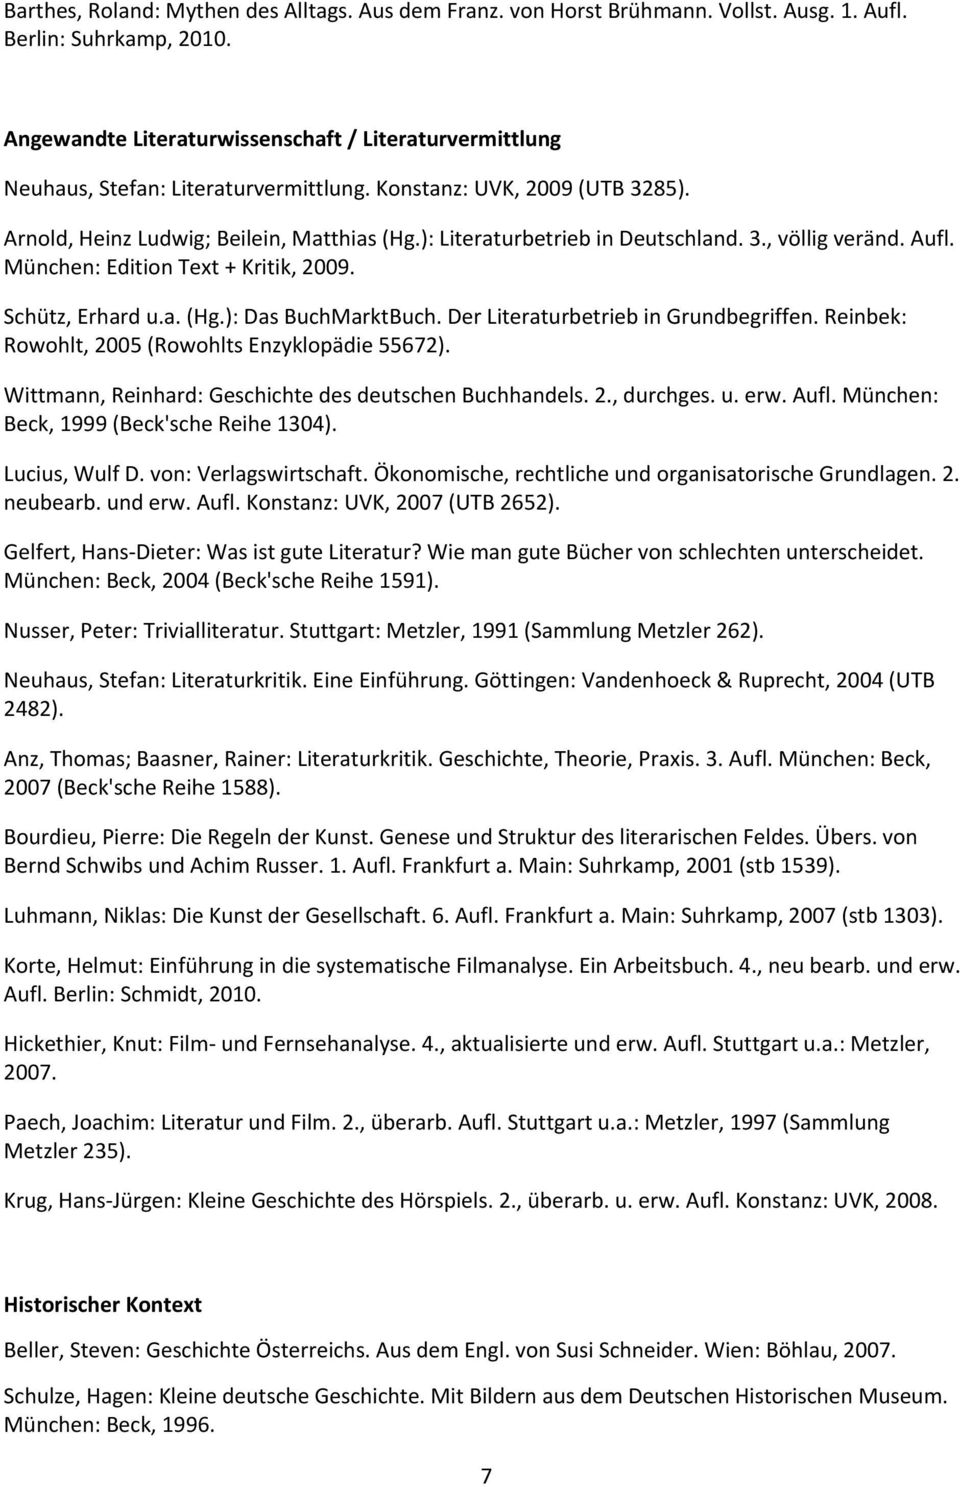 DerLiteraturbetriebinGrundbegriffen.Reinbek: Rowohlt,2005(RowohltsEnzyklopädie55672). Wittmann,Reinhard:GeschichtedesdeutschenBuchhandels.2.,durchges.u.erw.Aufl.München: Beck,1999(Beck'scheReihe1304).